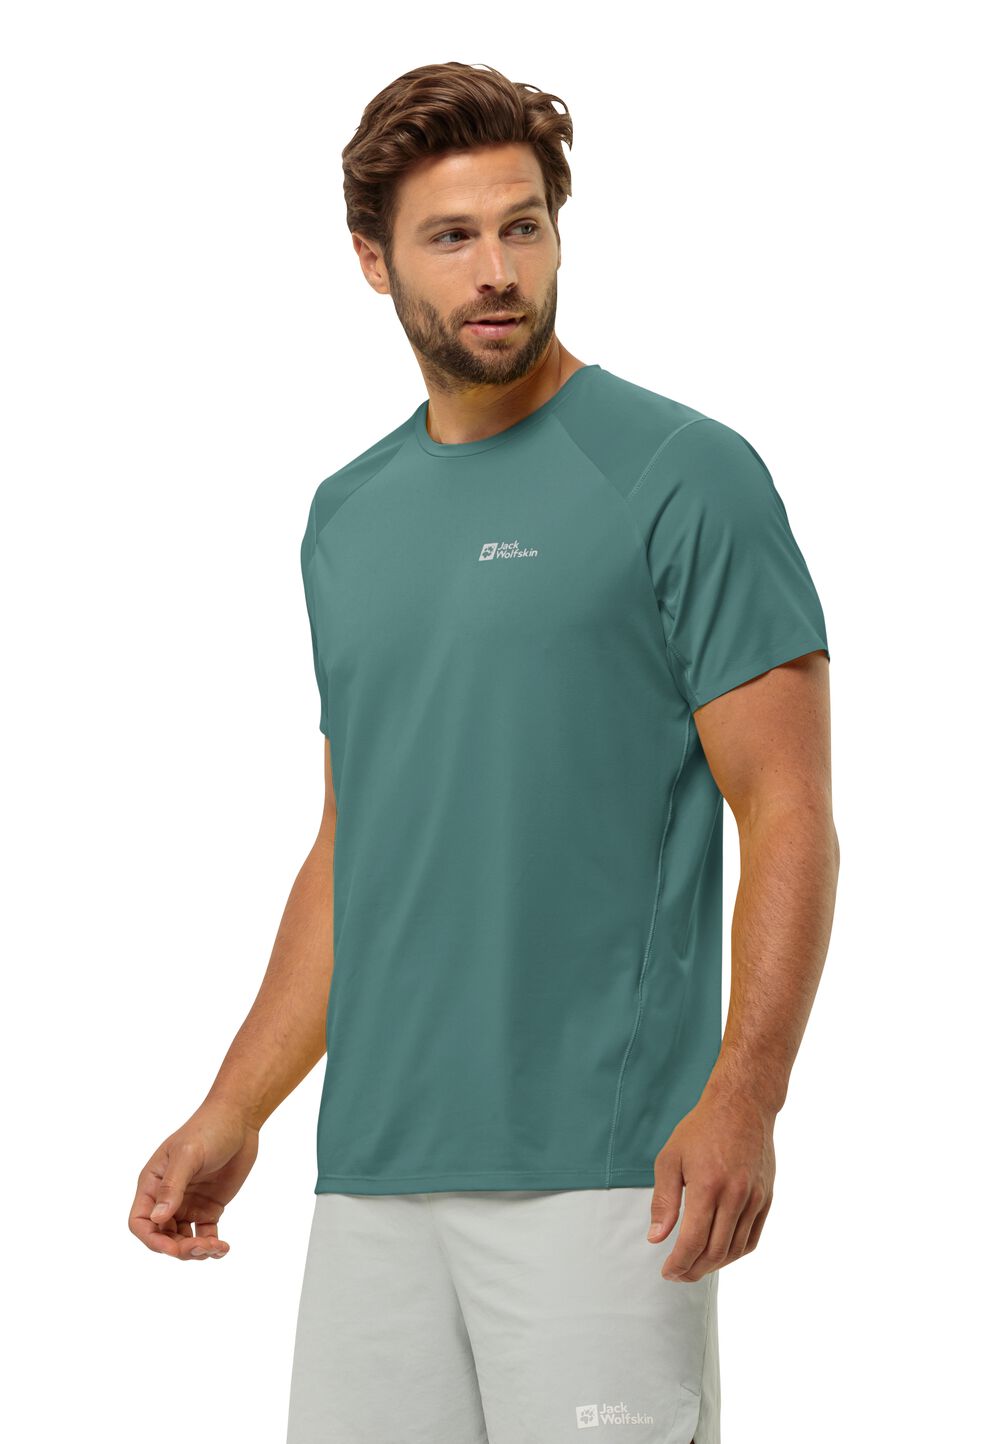 Jack Wolfskin Prelight Chill T-Shirt Men Functioneel shirt Heren XL jade green jade green